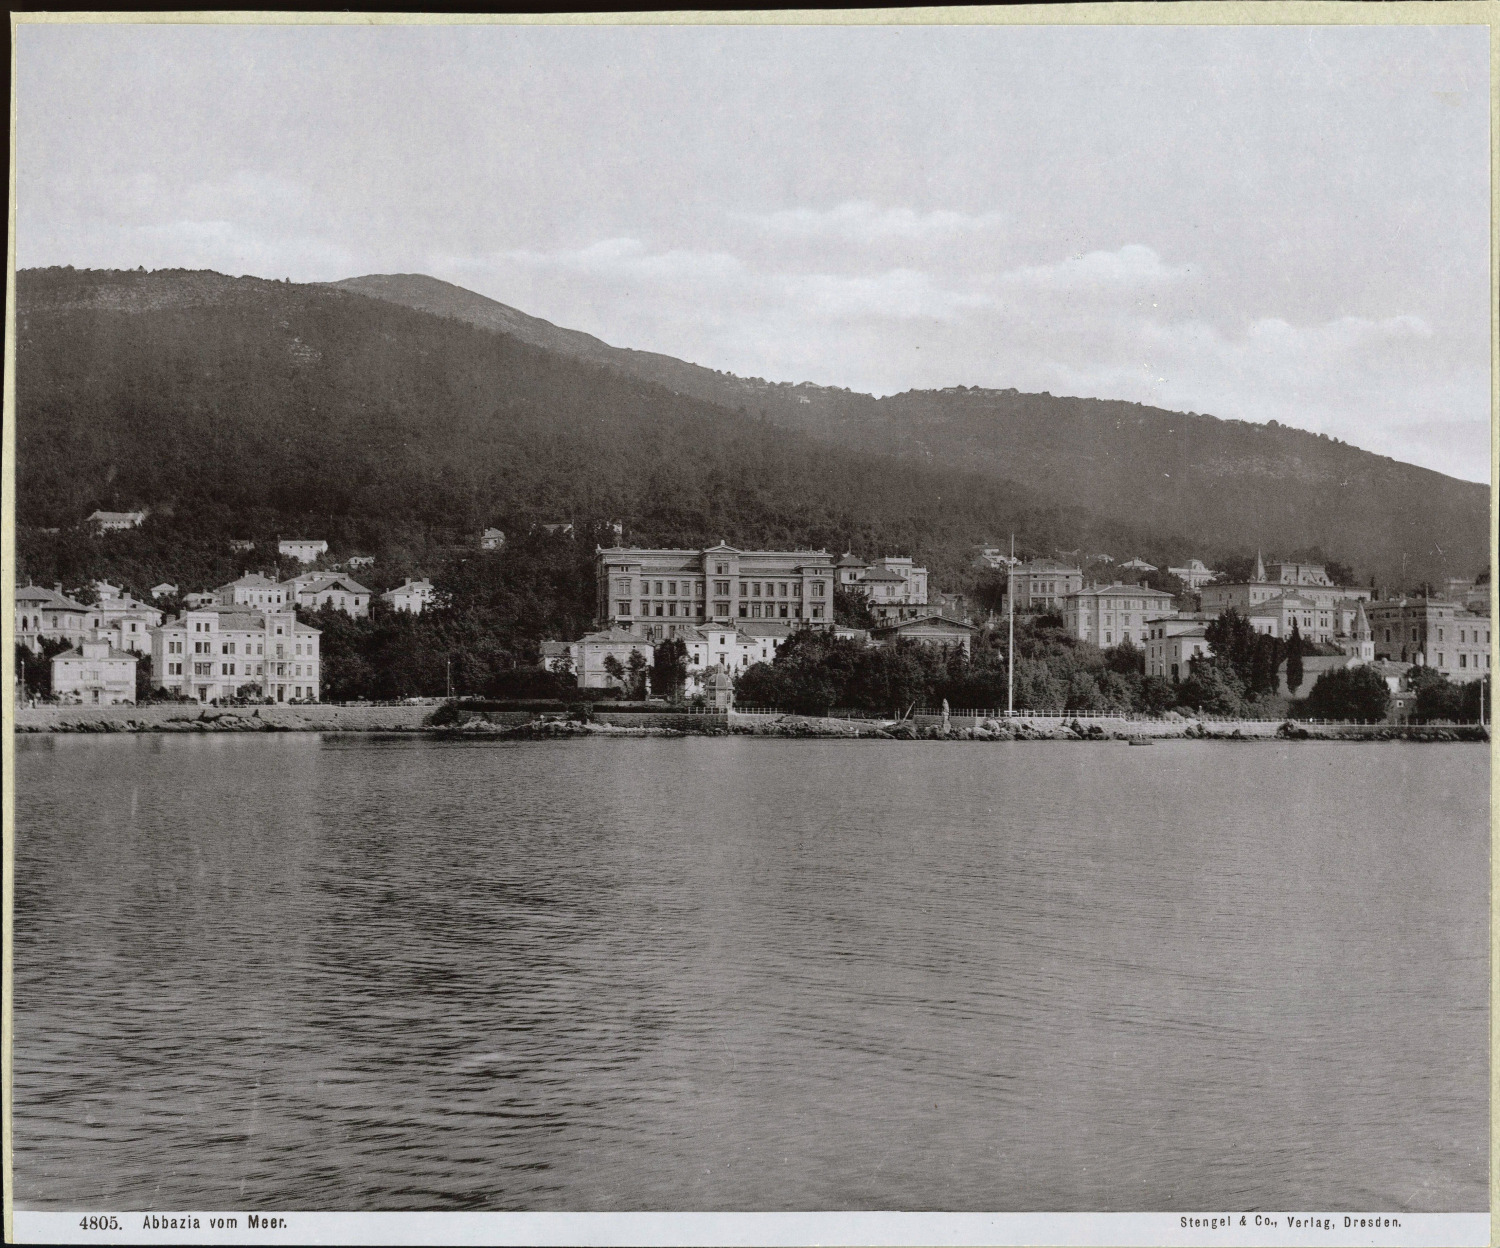 Stengel & Co, Hrvatska, Opatija (Abbey), Pogled s Mora vintage photomechanical